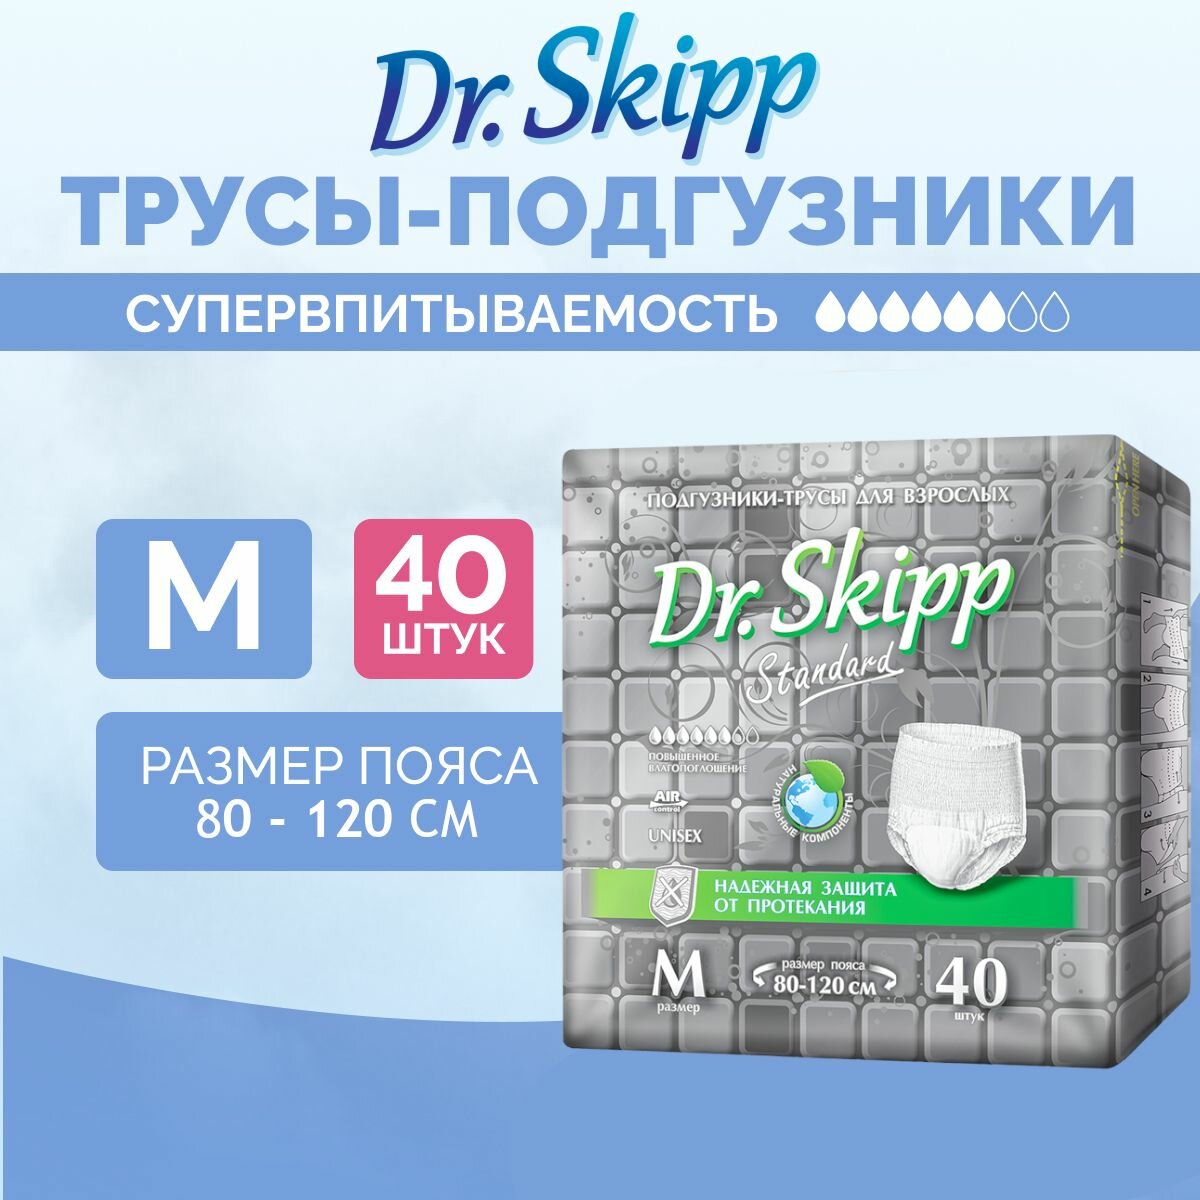 Подгузники-трусы для взрослых Dr. Skipp Standard М, 40 шт, 8151